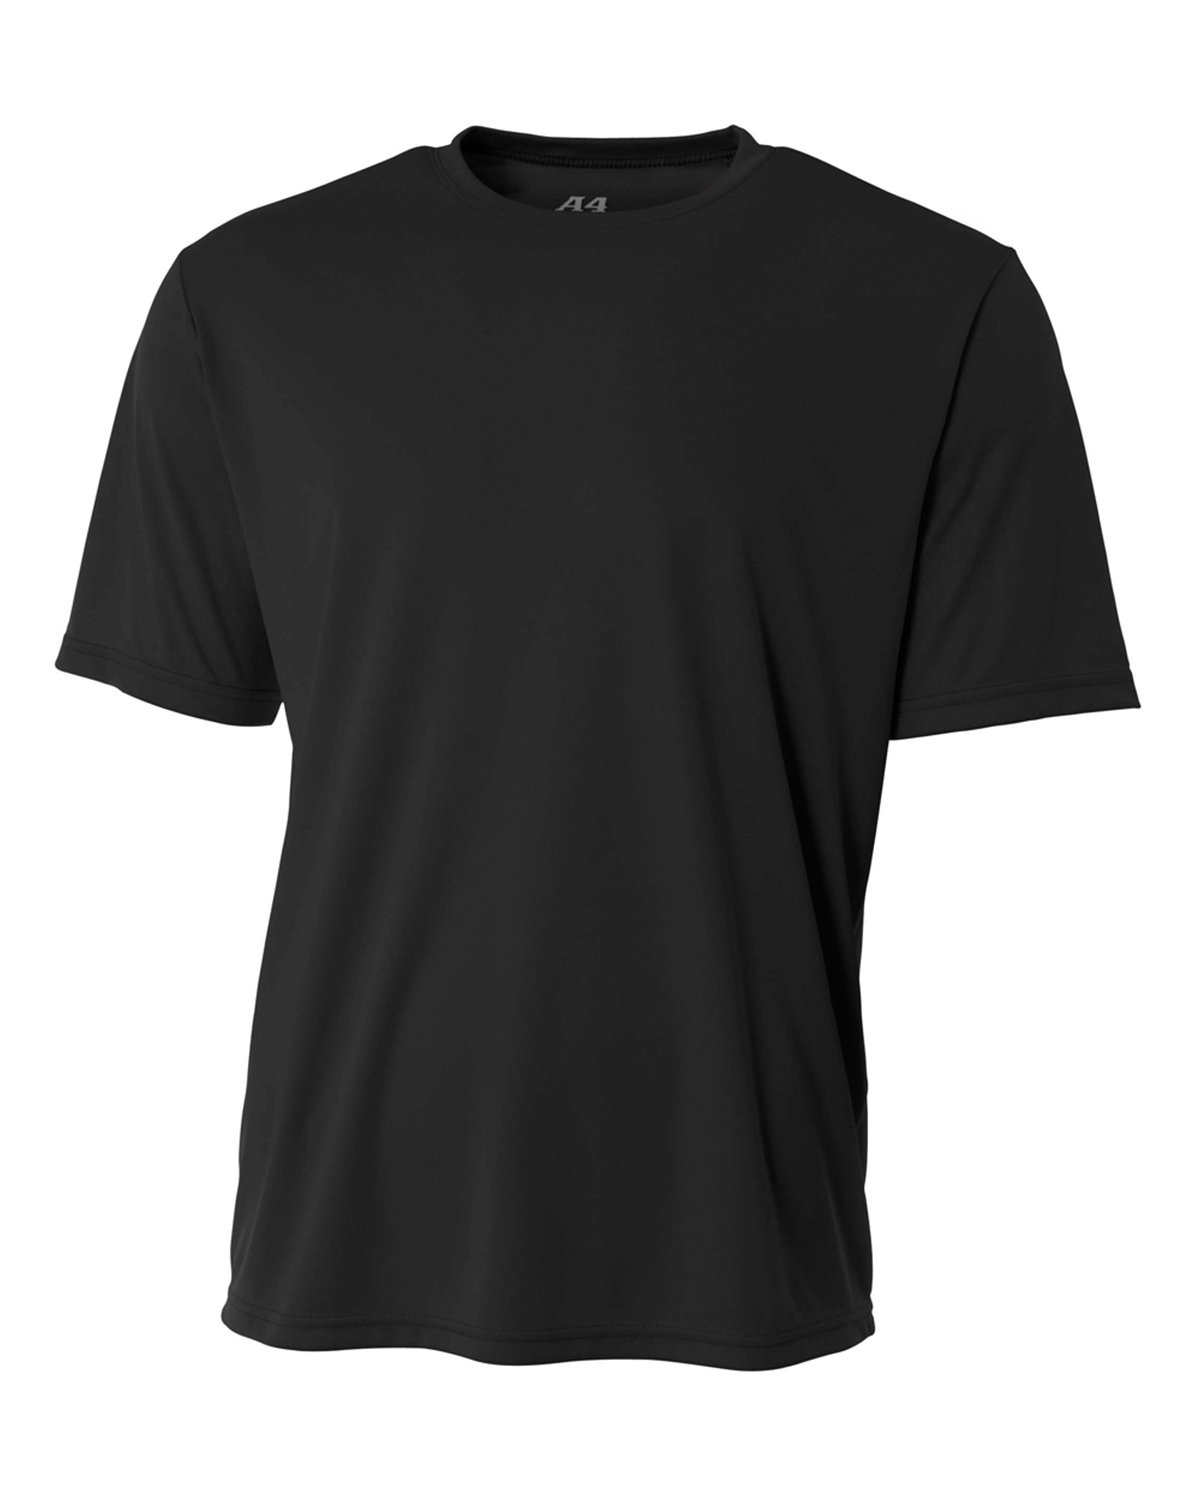 A4 Men's Cooling Performance T-Shirt | alphabroder